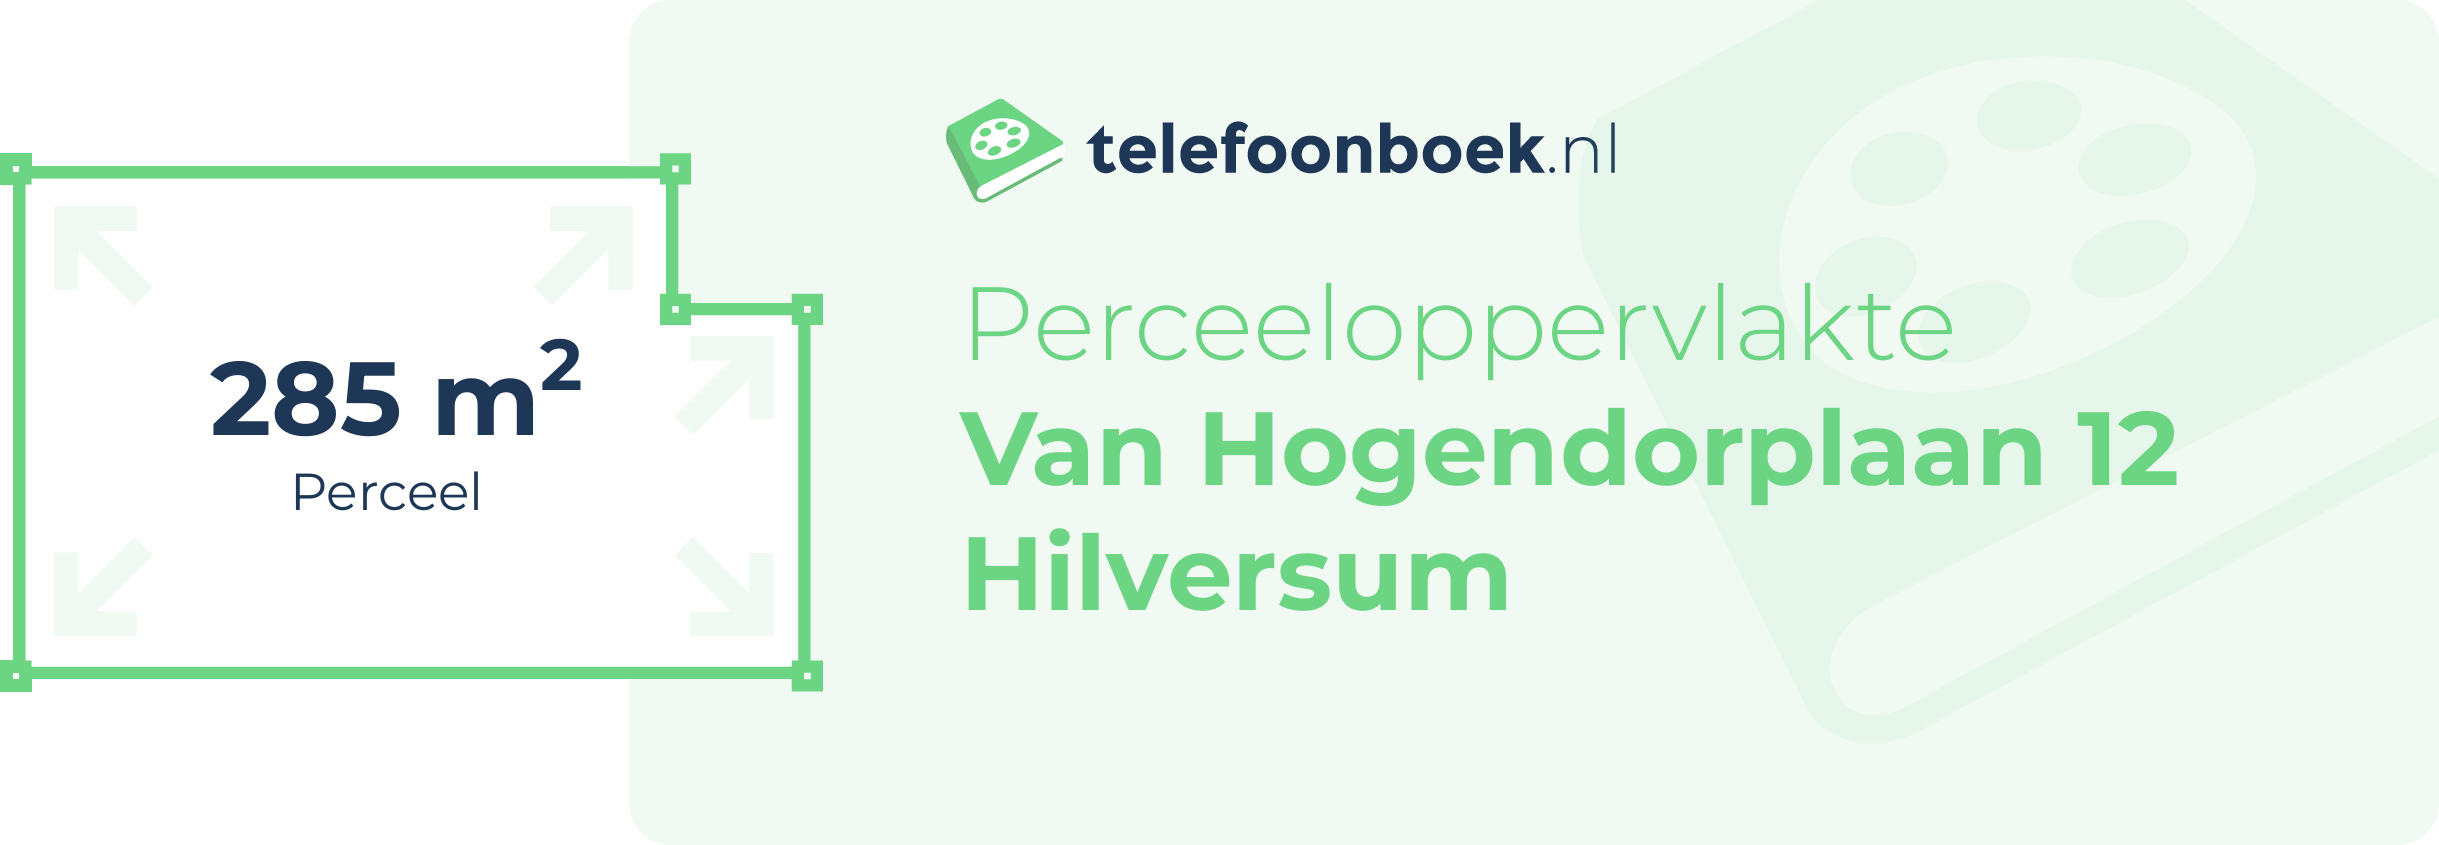 Perceeloppervlakte Van Hogendorplaan 12 Hilversum